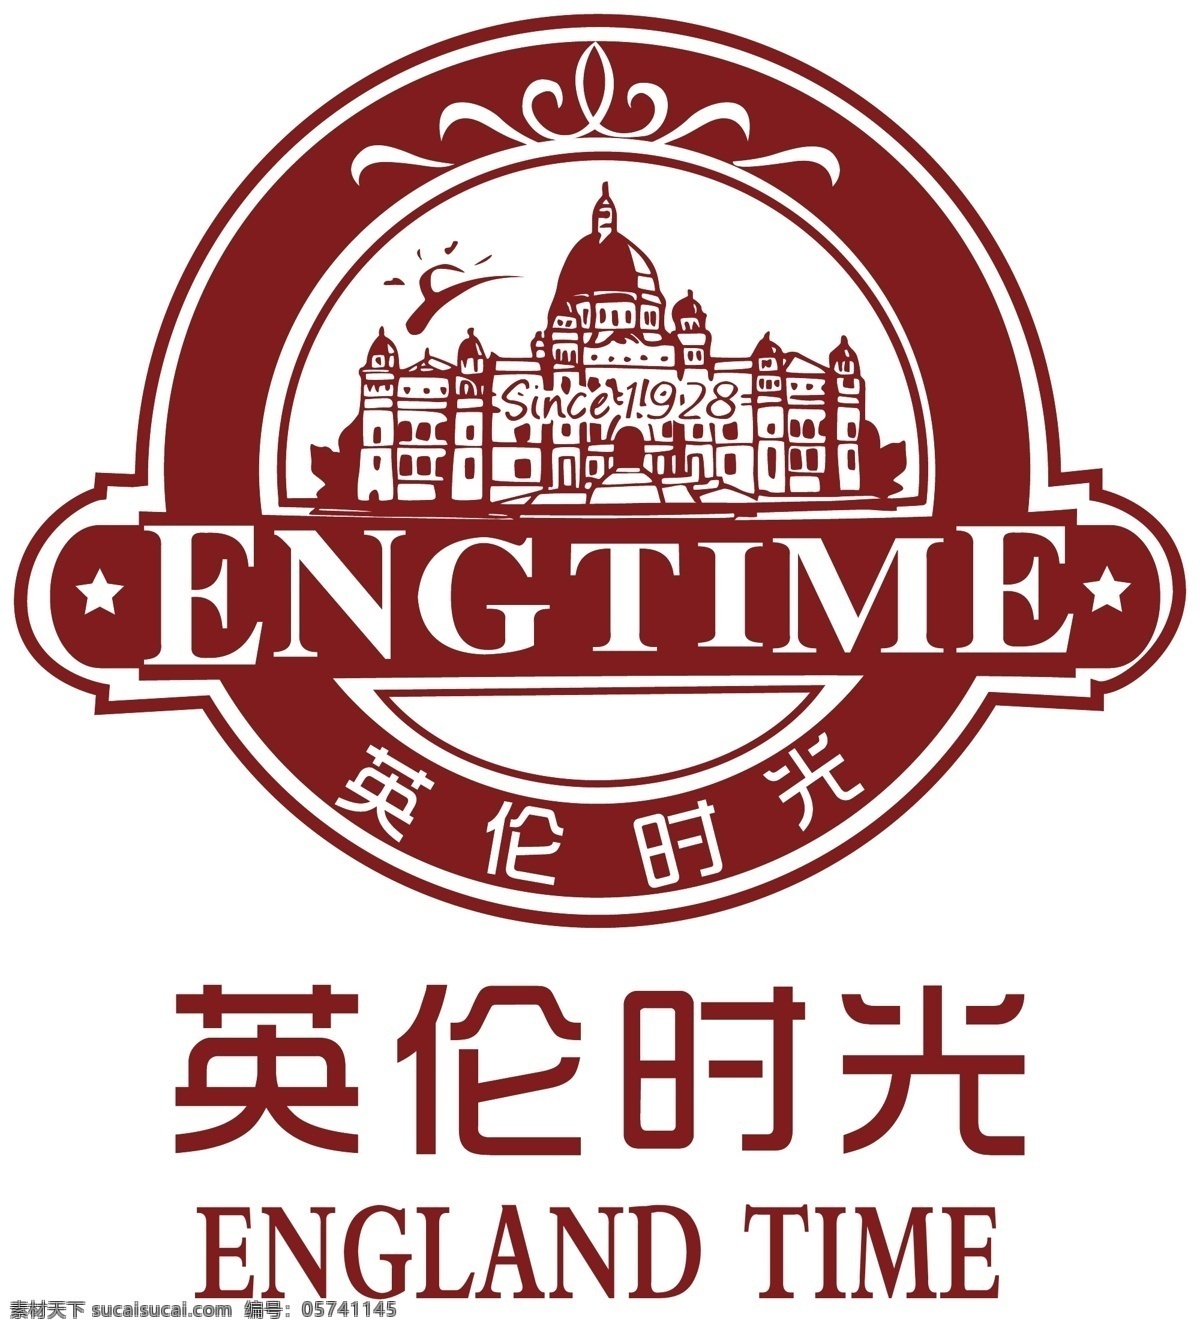 英伦 时光 logo 英伦时光 面包标志 欧式建筑 咖啡馆标志 包装设计